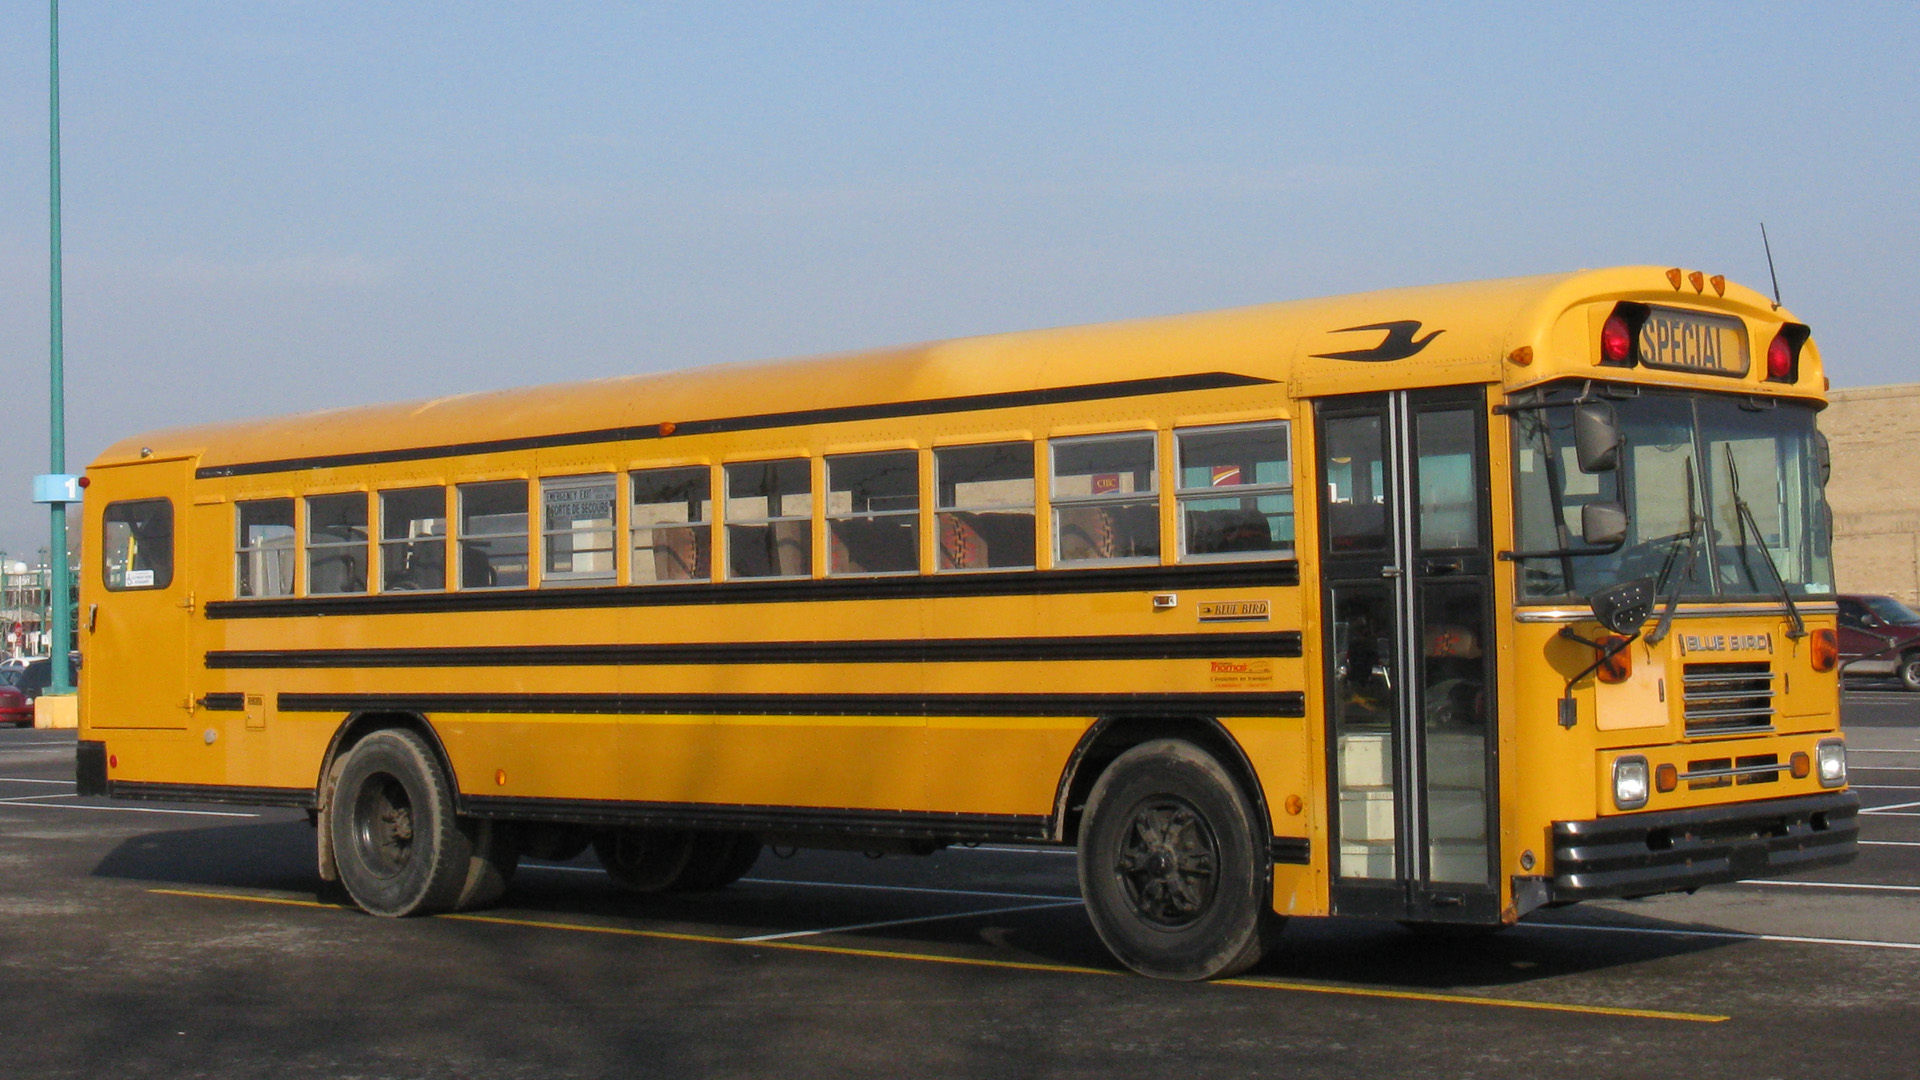 Blue Bird School Bus | Flickr - Photo Sharing!